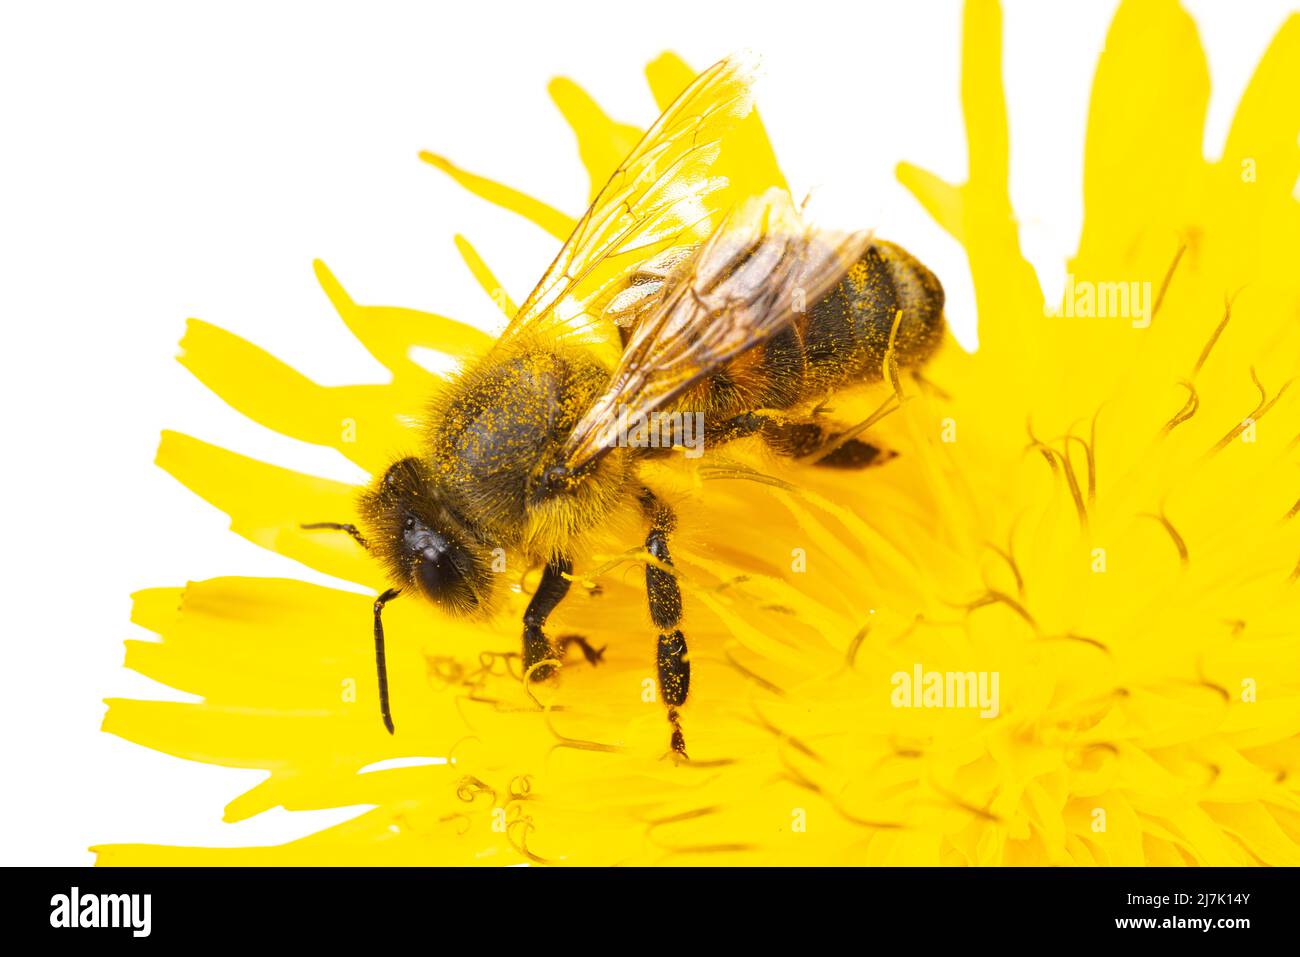 Insekten Europas - Bienen: Makro der europäischen Honigbiene ( APIs mellifera) isoliert auf weißem Hintergrund auf einer gelben Blume sitzend Stockfoto